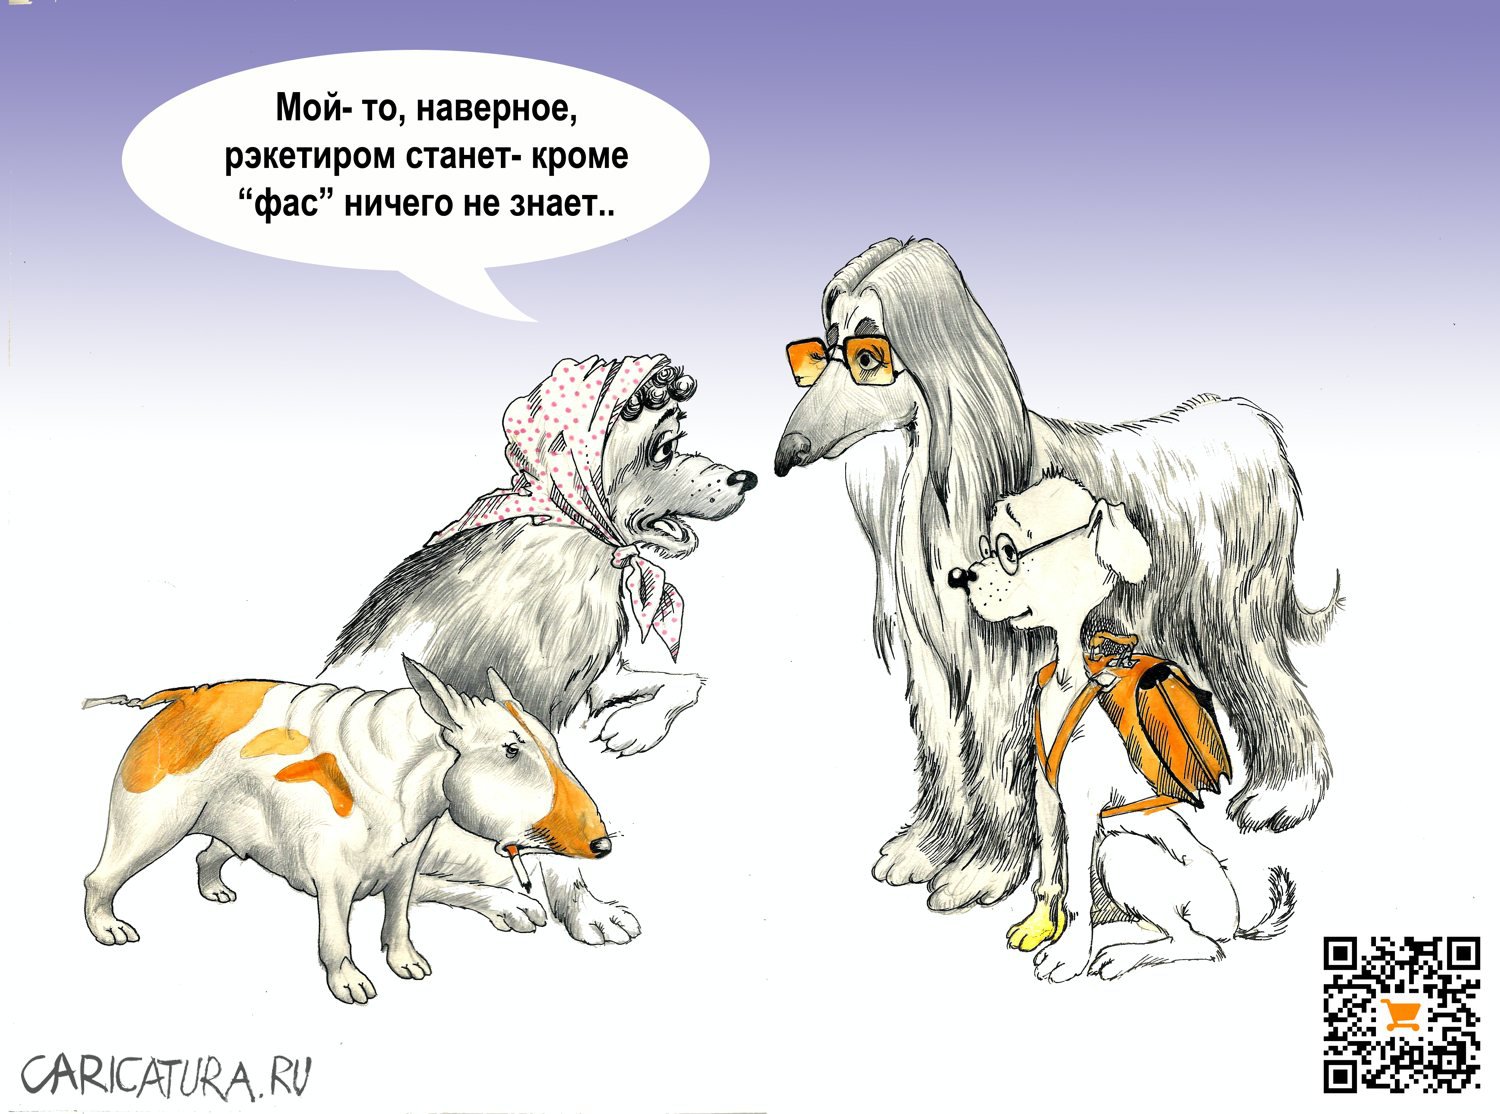 Карикатура "Пёс-рэкетир", Александр Шульпинов